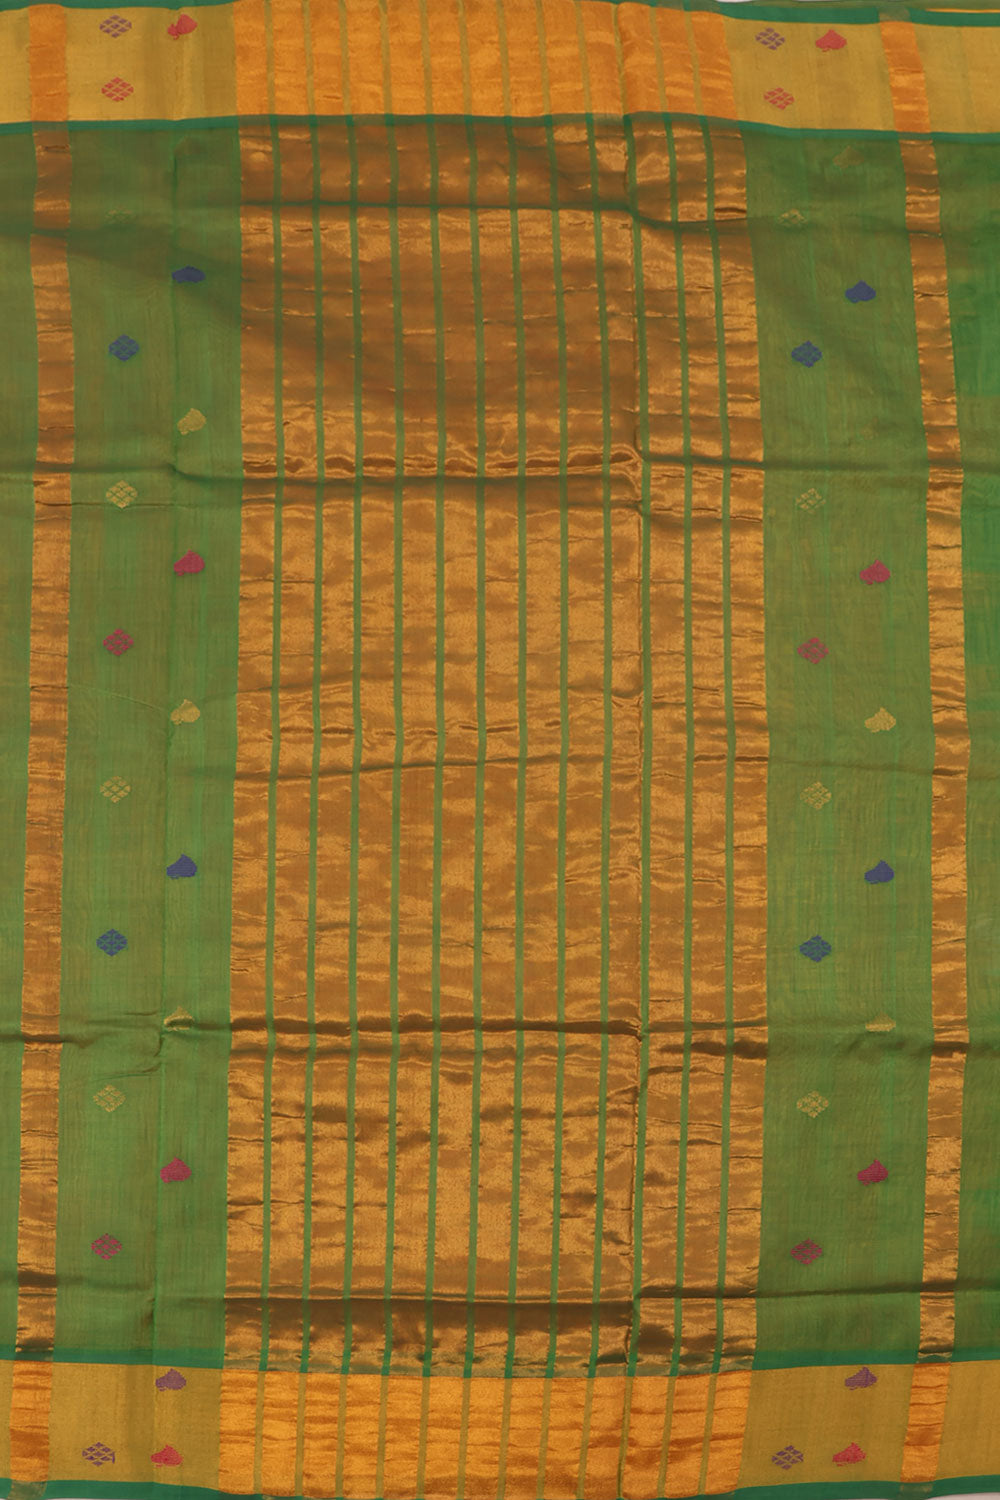 Sunset Orange Handwoven Silk Cotton Kora Butta Saree 10060188